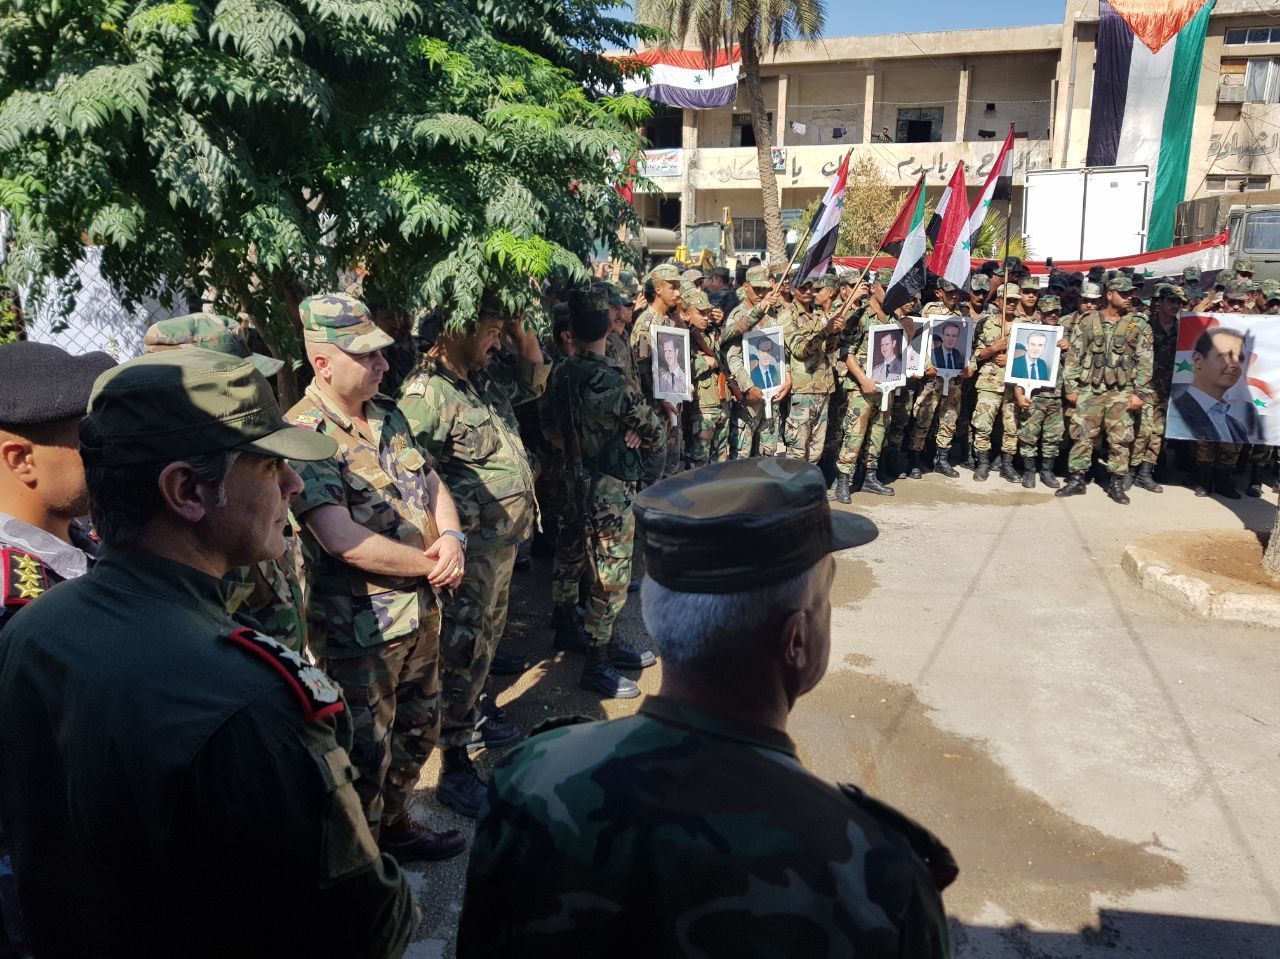 جنود سوريون يحتفلون بعيد الجيش وسط غابة من القواعد الأمريكية